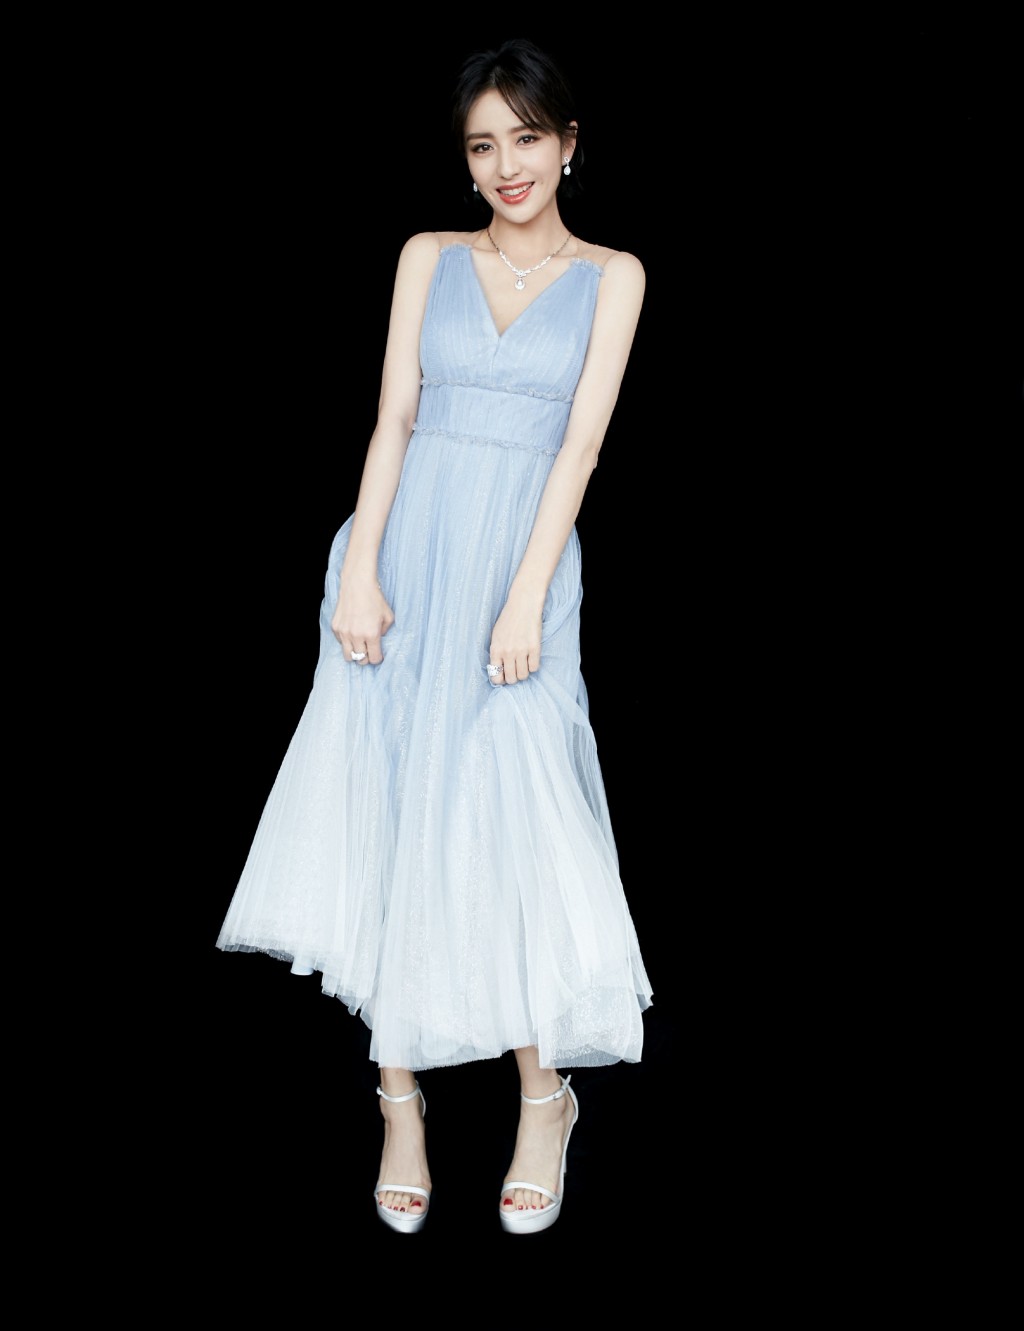 佟丽娅淡蓝色长裙优雅气质活动照图片